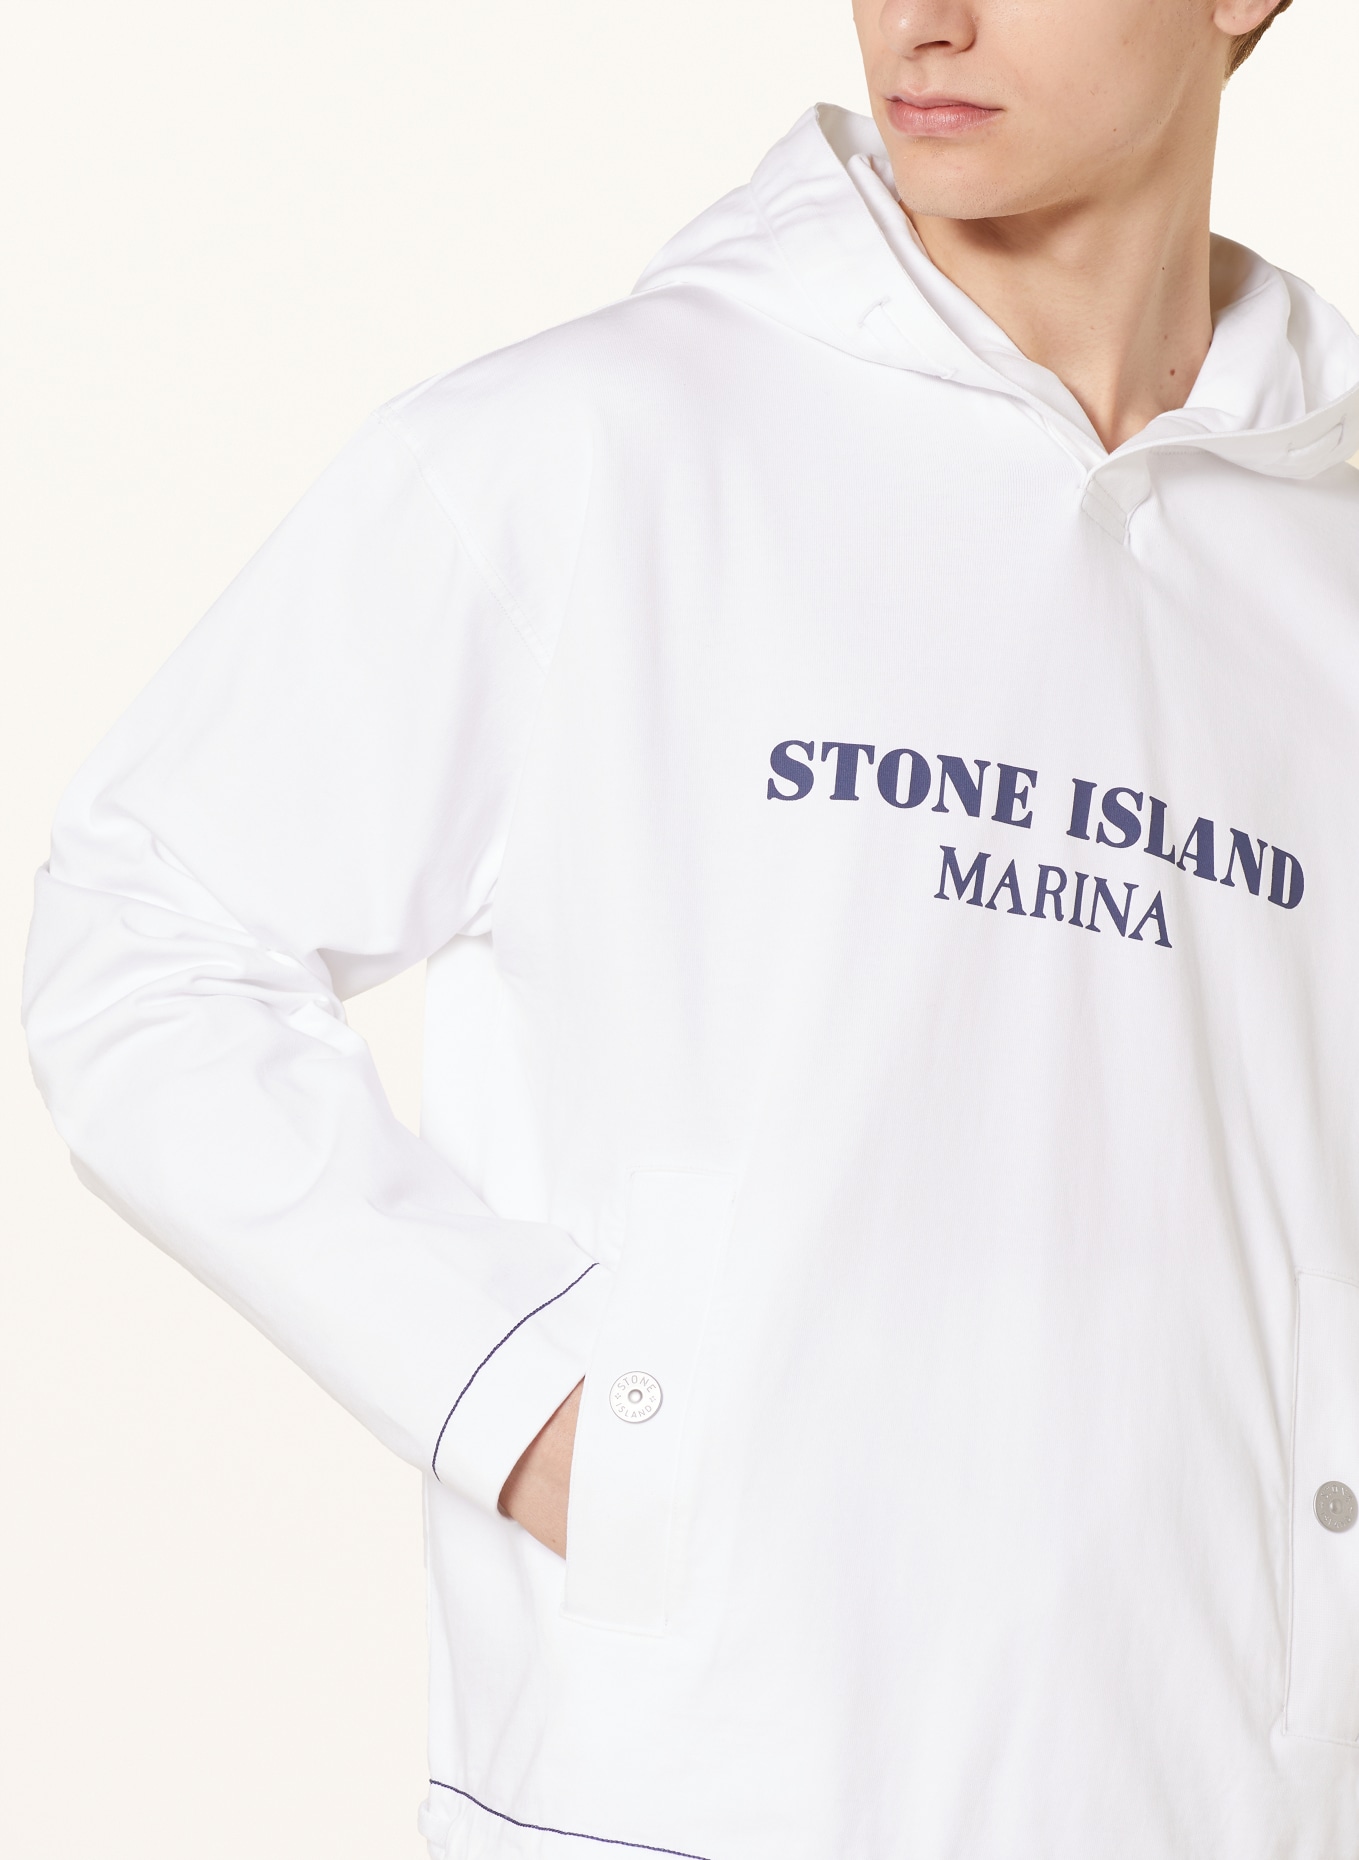 STONE ISLAND Oversized hoodie MARINA, Color: WHITE (Image 5)